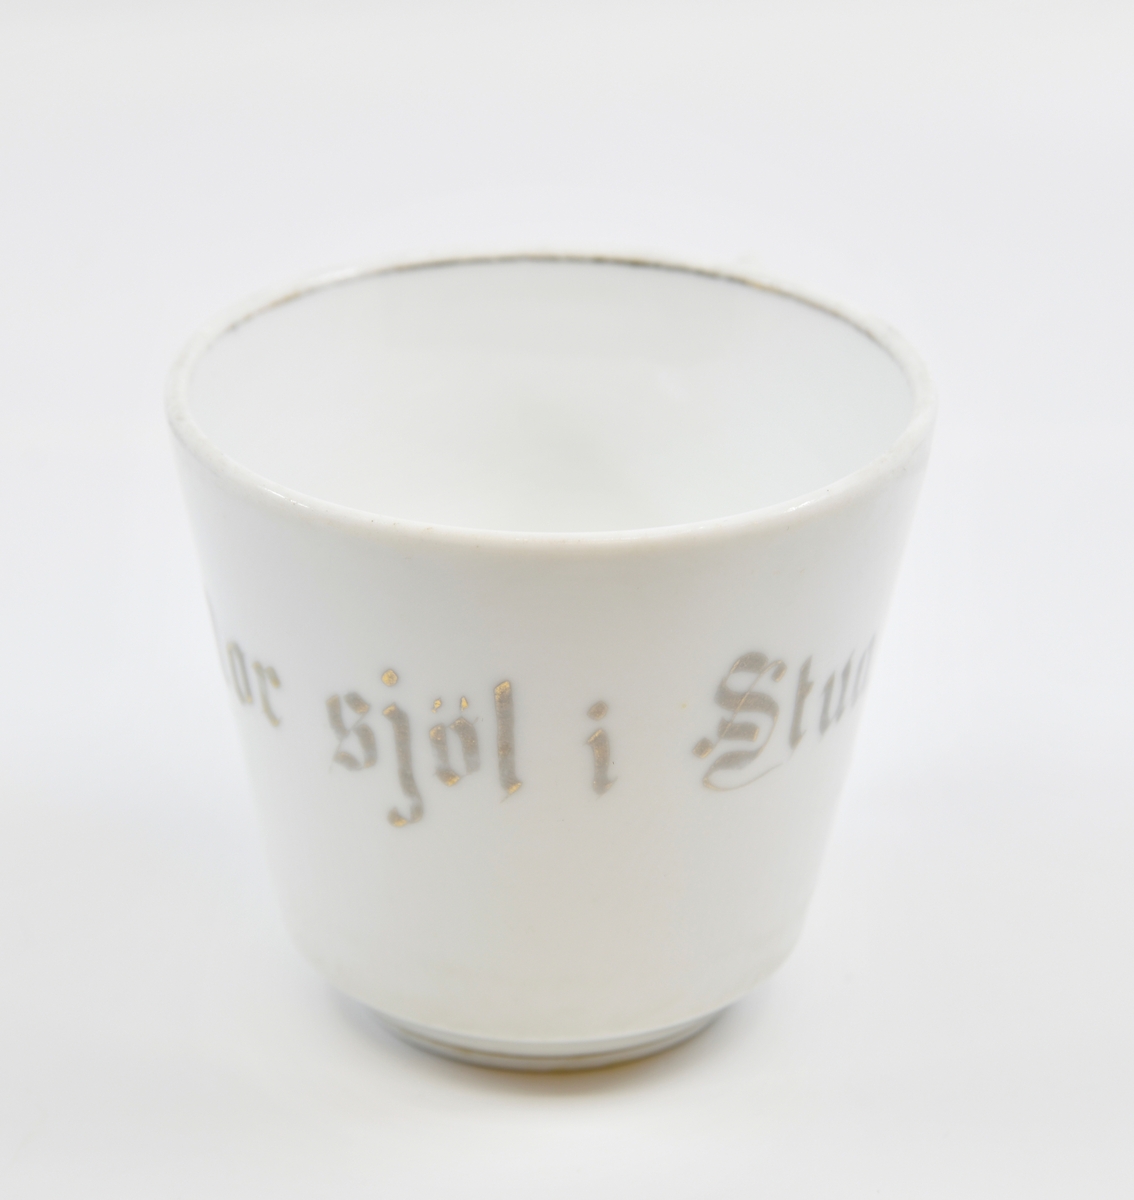 En kopp med tefat i hvitglasert porselen. Koppen har gullstripe nederst og på innsiden øverst. På koppen er det tekst i grått/gullfarge. I den ene siden er det en firkantet hank formet som en stav (stavhank).